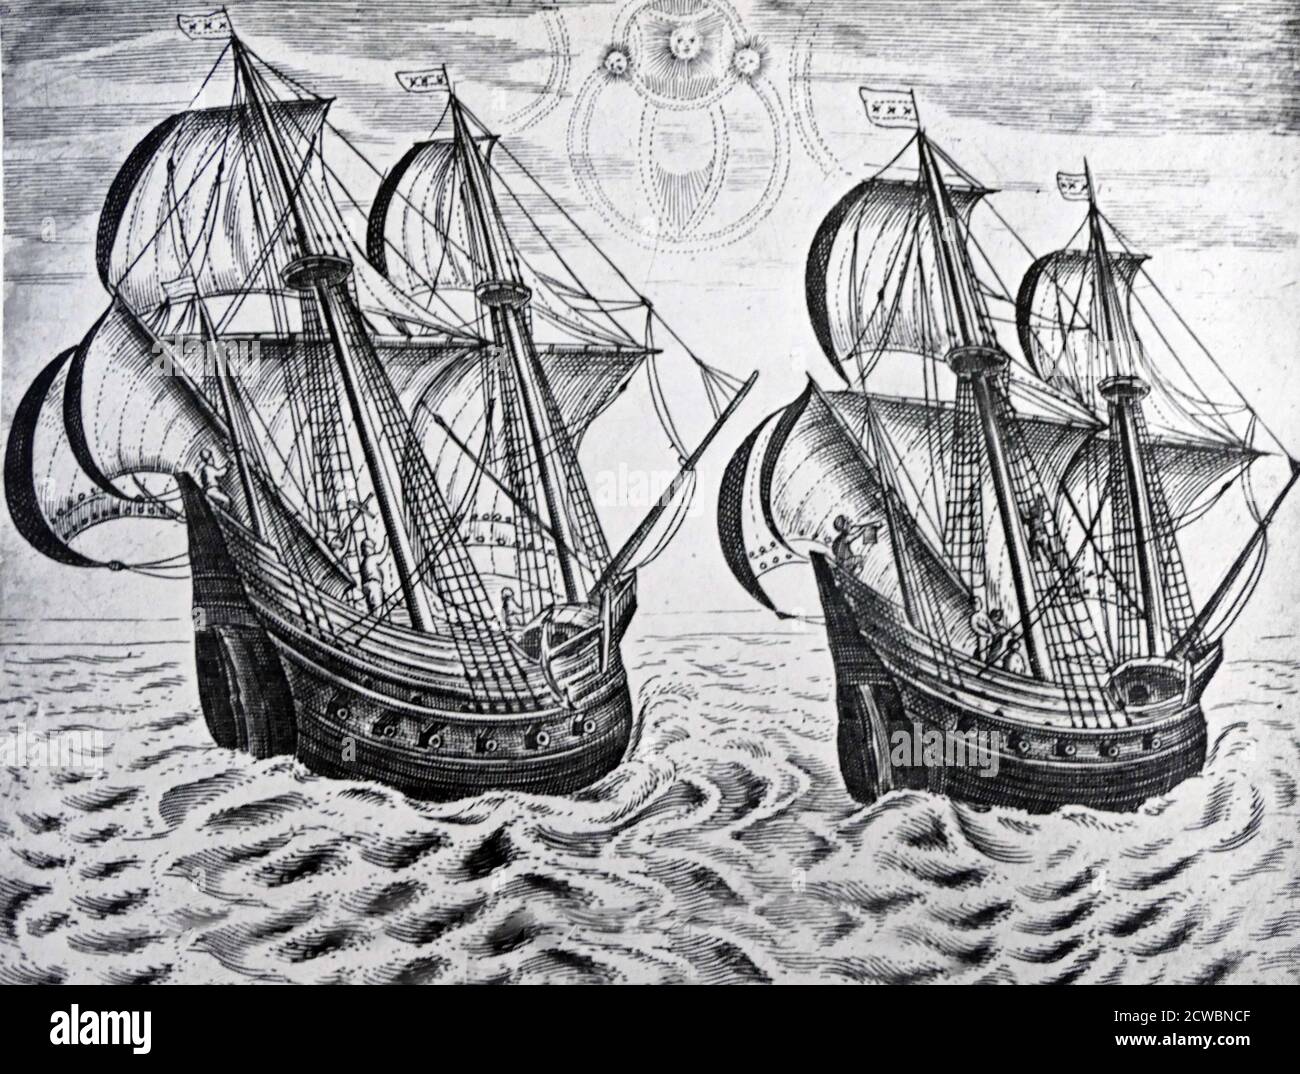 Illustrazione che mostra il viaggio di William Barents in Cina 1596. Willem Barentsz (c. 1550 - 20 giugno 1597), anglicizzato come William Barents o Barentz, è stato un navigatore, cartografo ed esploratore olandese. Nel 1596, il comune di Amsterdam acquistò e equipaggiò due piccole navi, capitanate da Jan Rijp e Jacob van Heemskerk, per cercare il canale sfuggente sotto il comando di Barentsz. Foto Stock